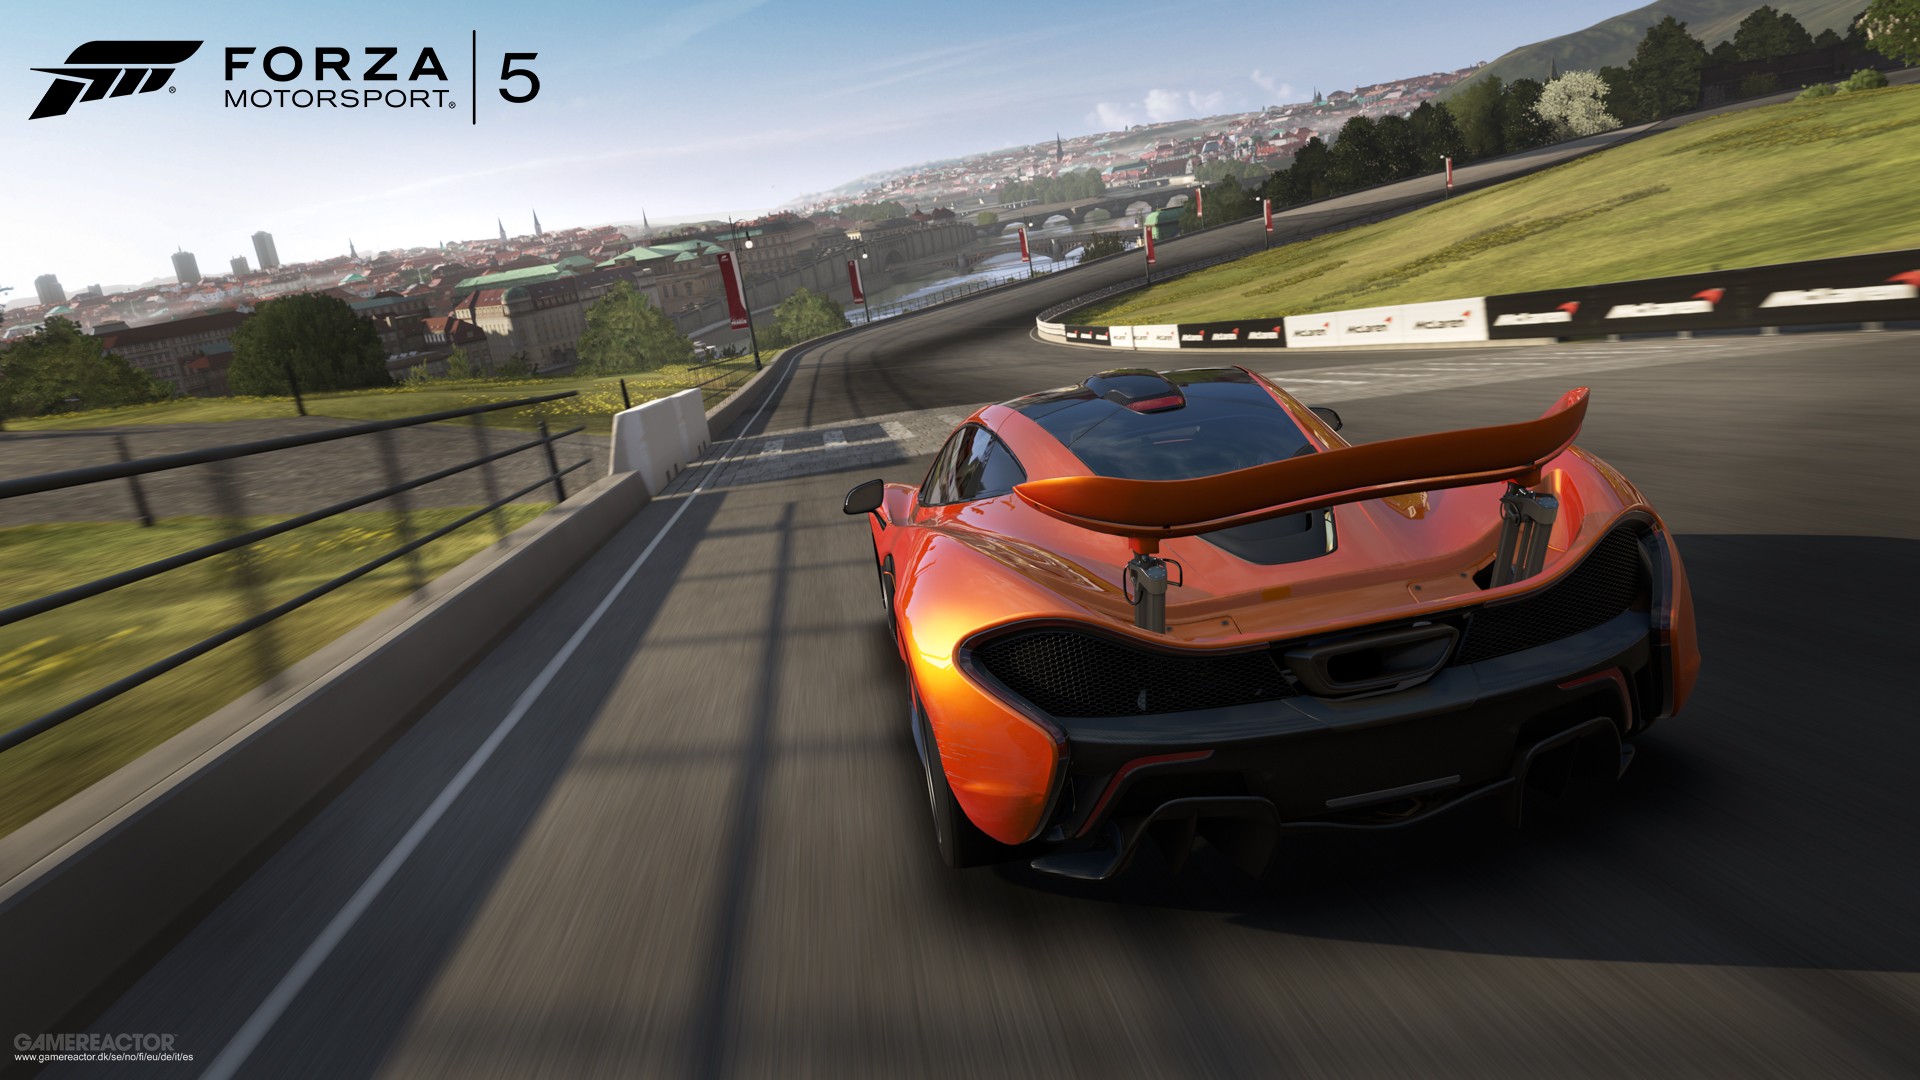 Forza reg. Форза 5. Форза хорайзен 5. Forza Motorsport в Forza Horizon 5. Forza 5 Xbox one.